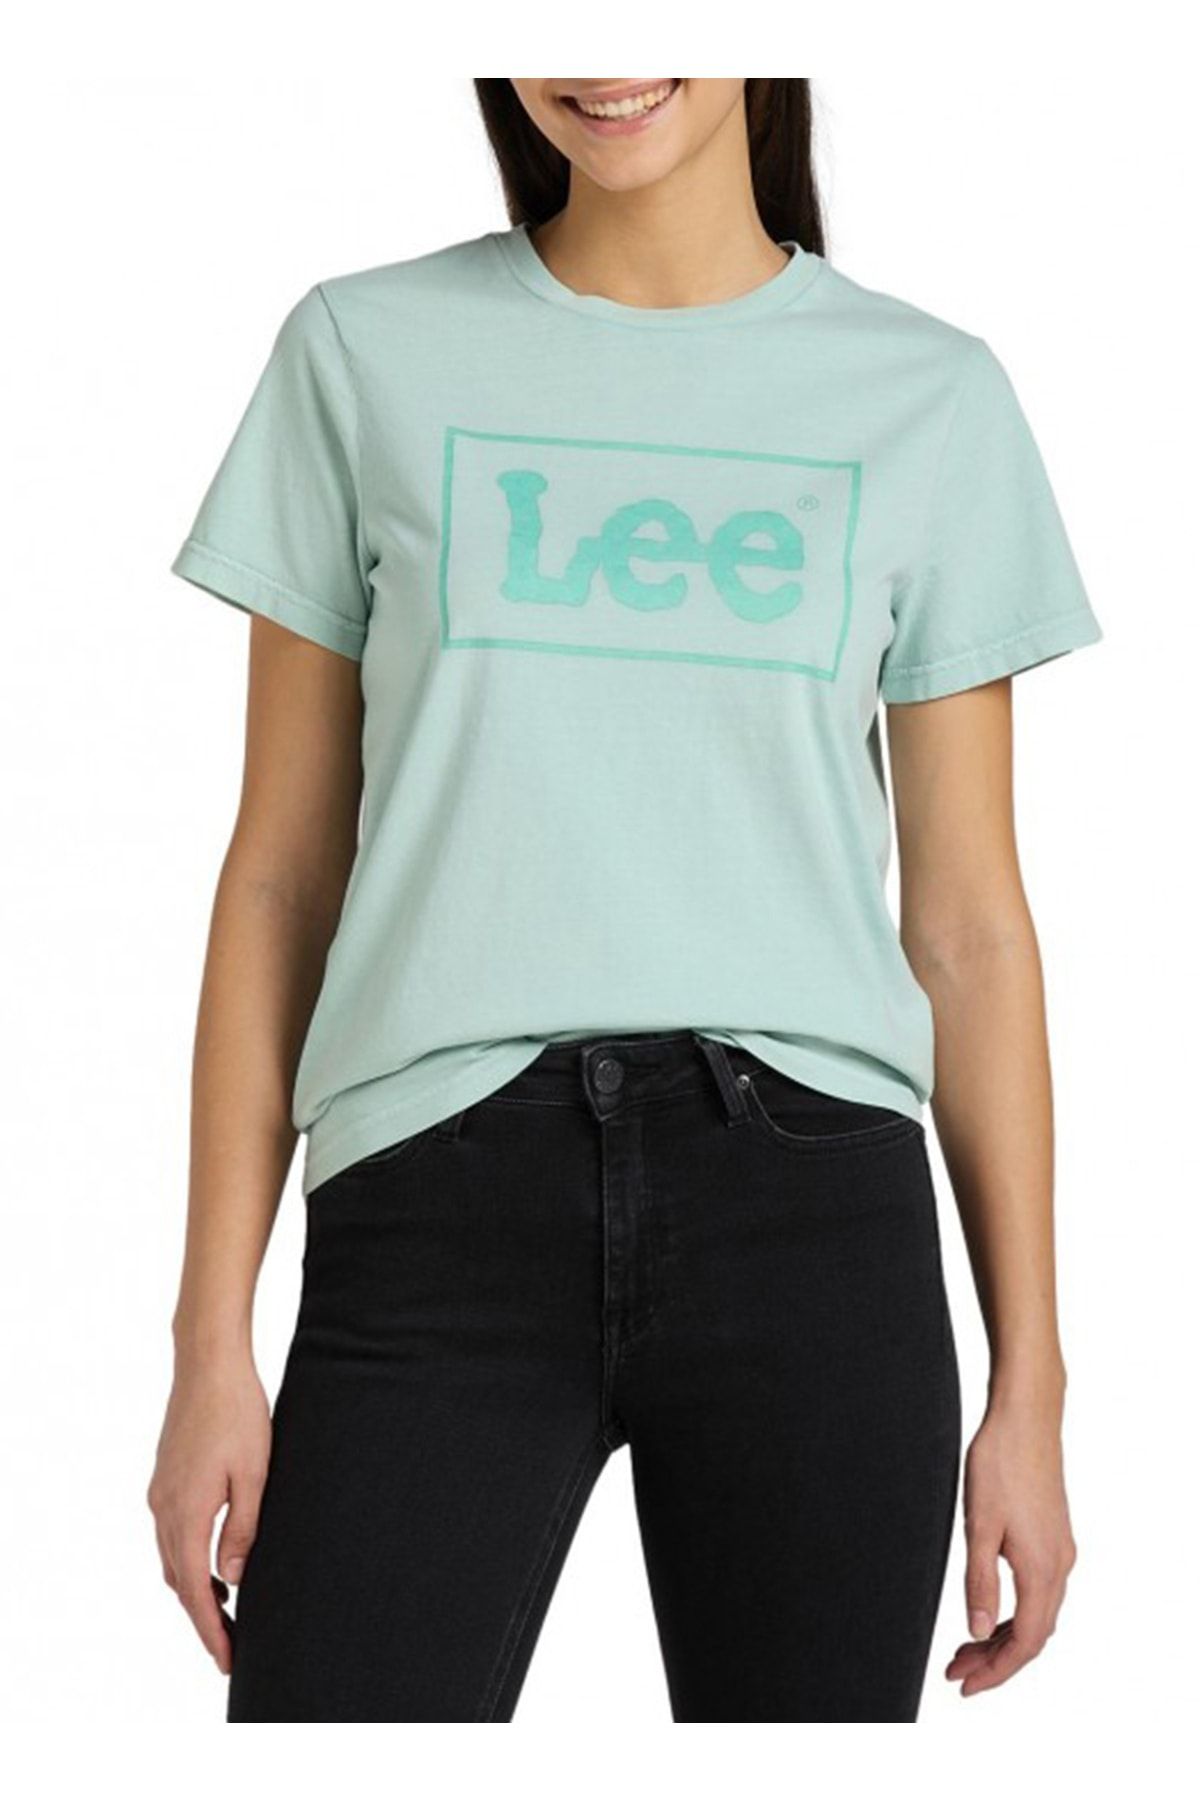 Lee T-shirt, Xs, Yeşil